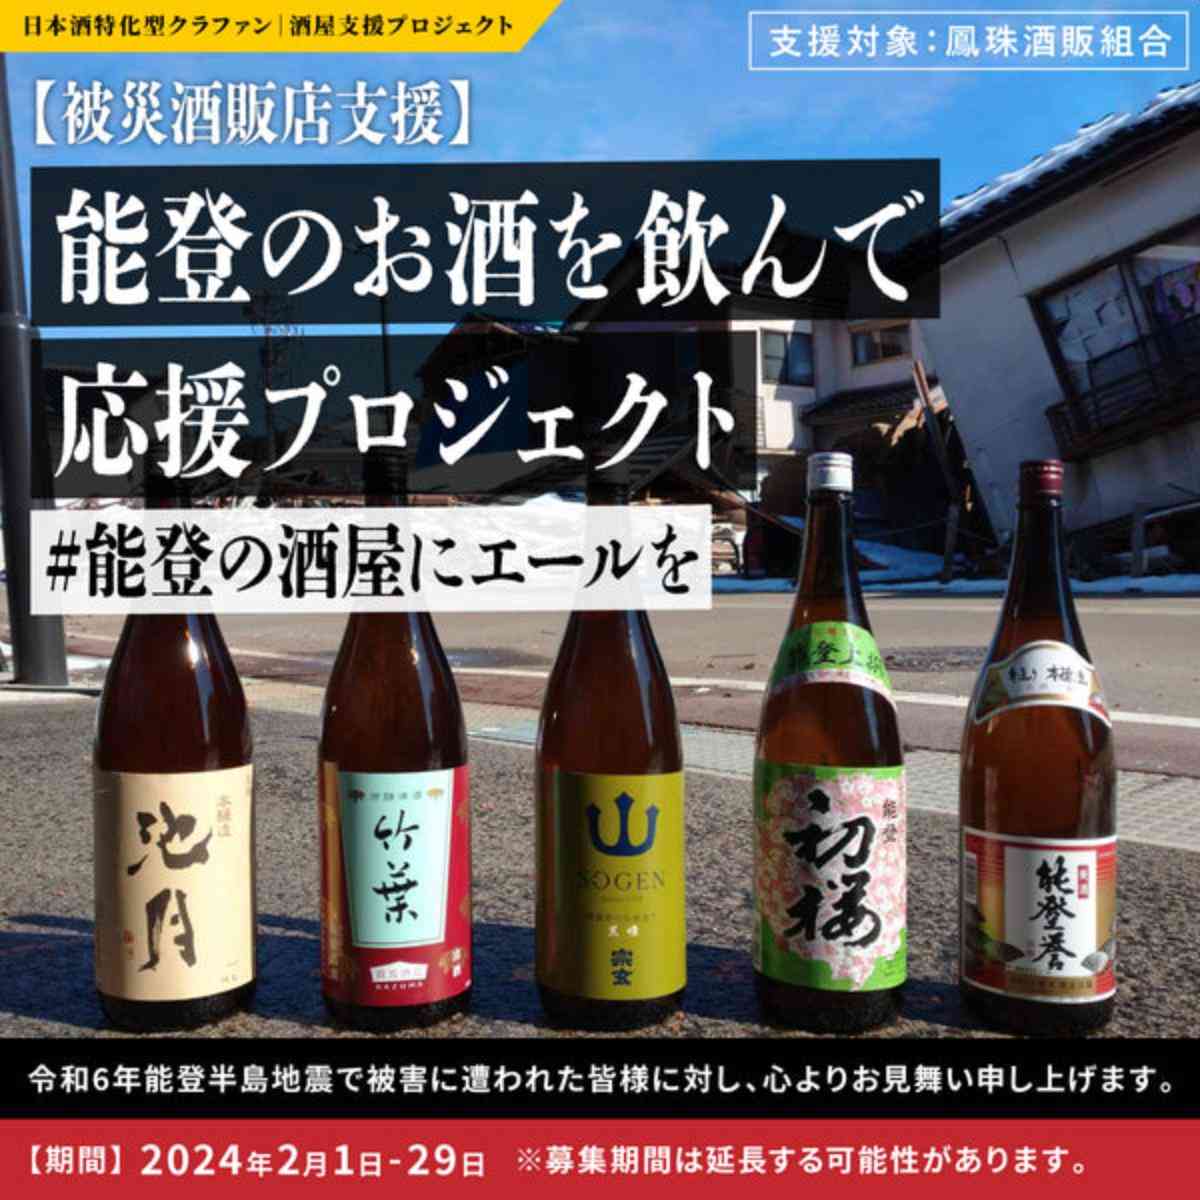 能登の日本酒瓶が被災地で5本並べられている